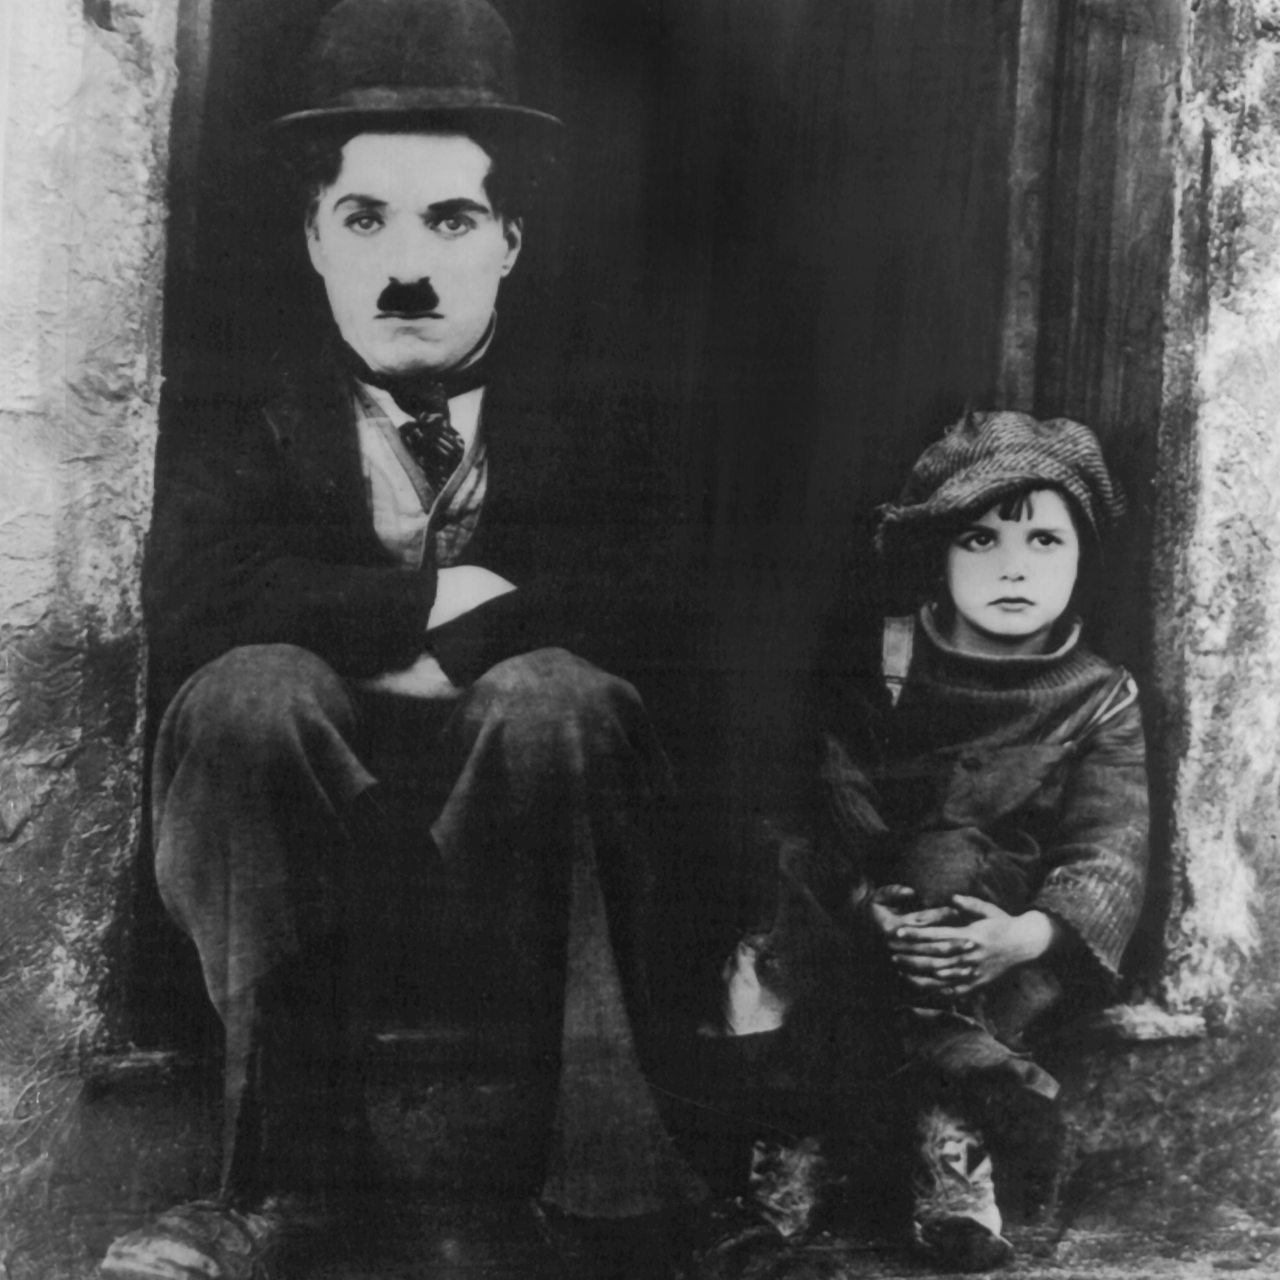 Charlie Chaplin als Vagabund und der damals sechsjährige Jackie Coogan als Kind in dem Kinofilm "The Kid" von 1921